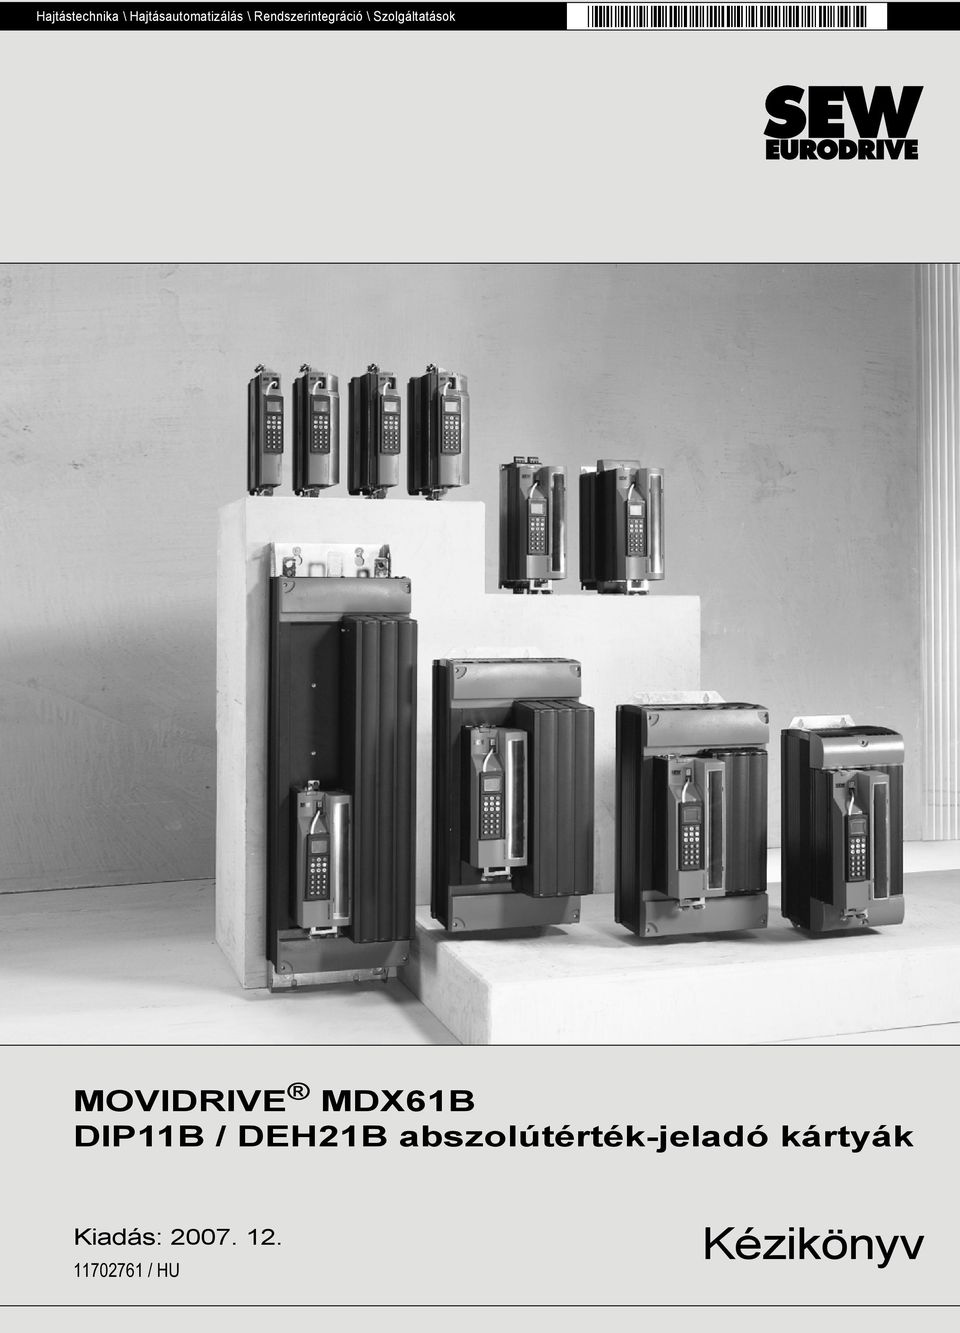 MOVIDRIVE MDX61B DIP11B / DEH21B